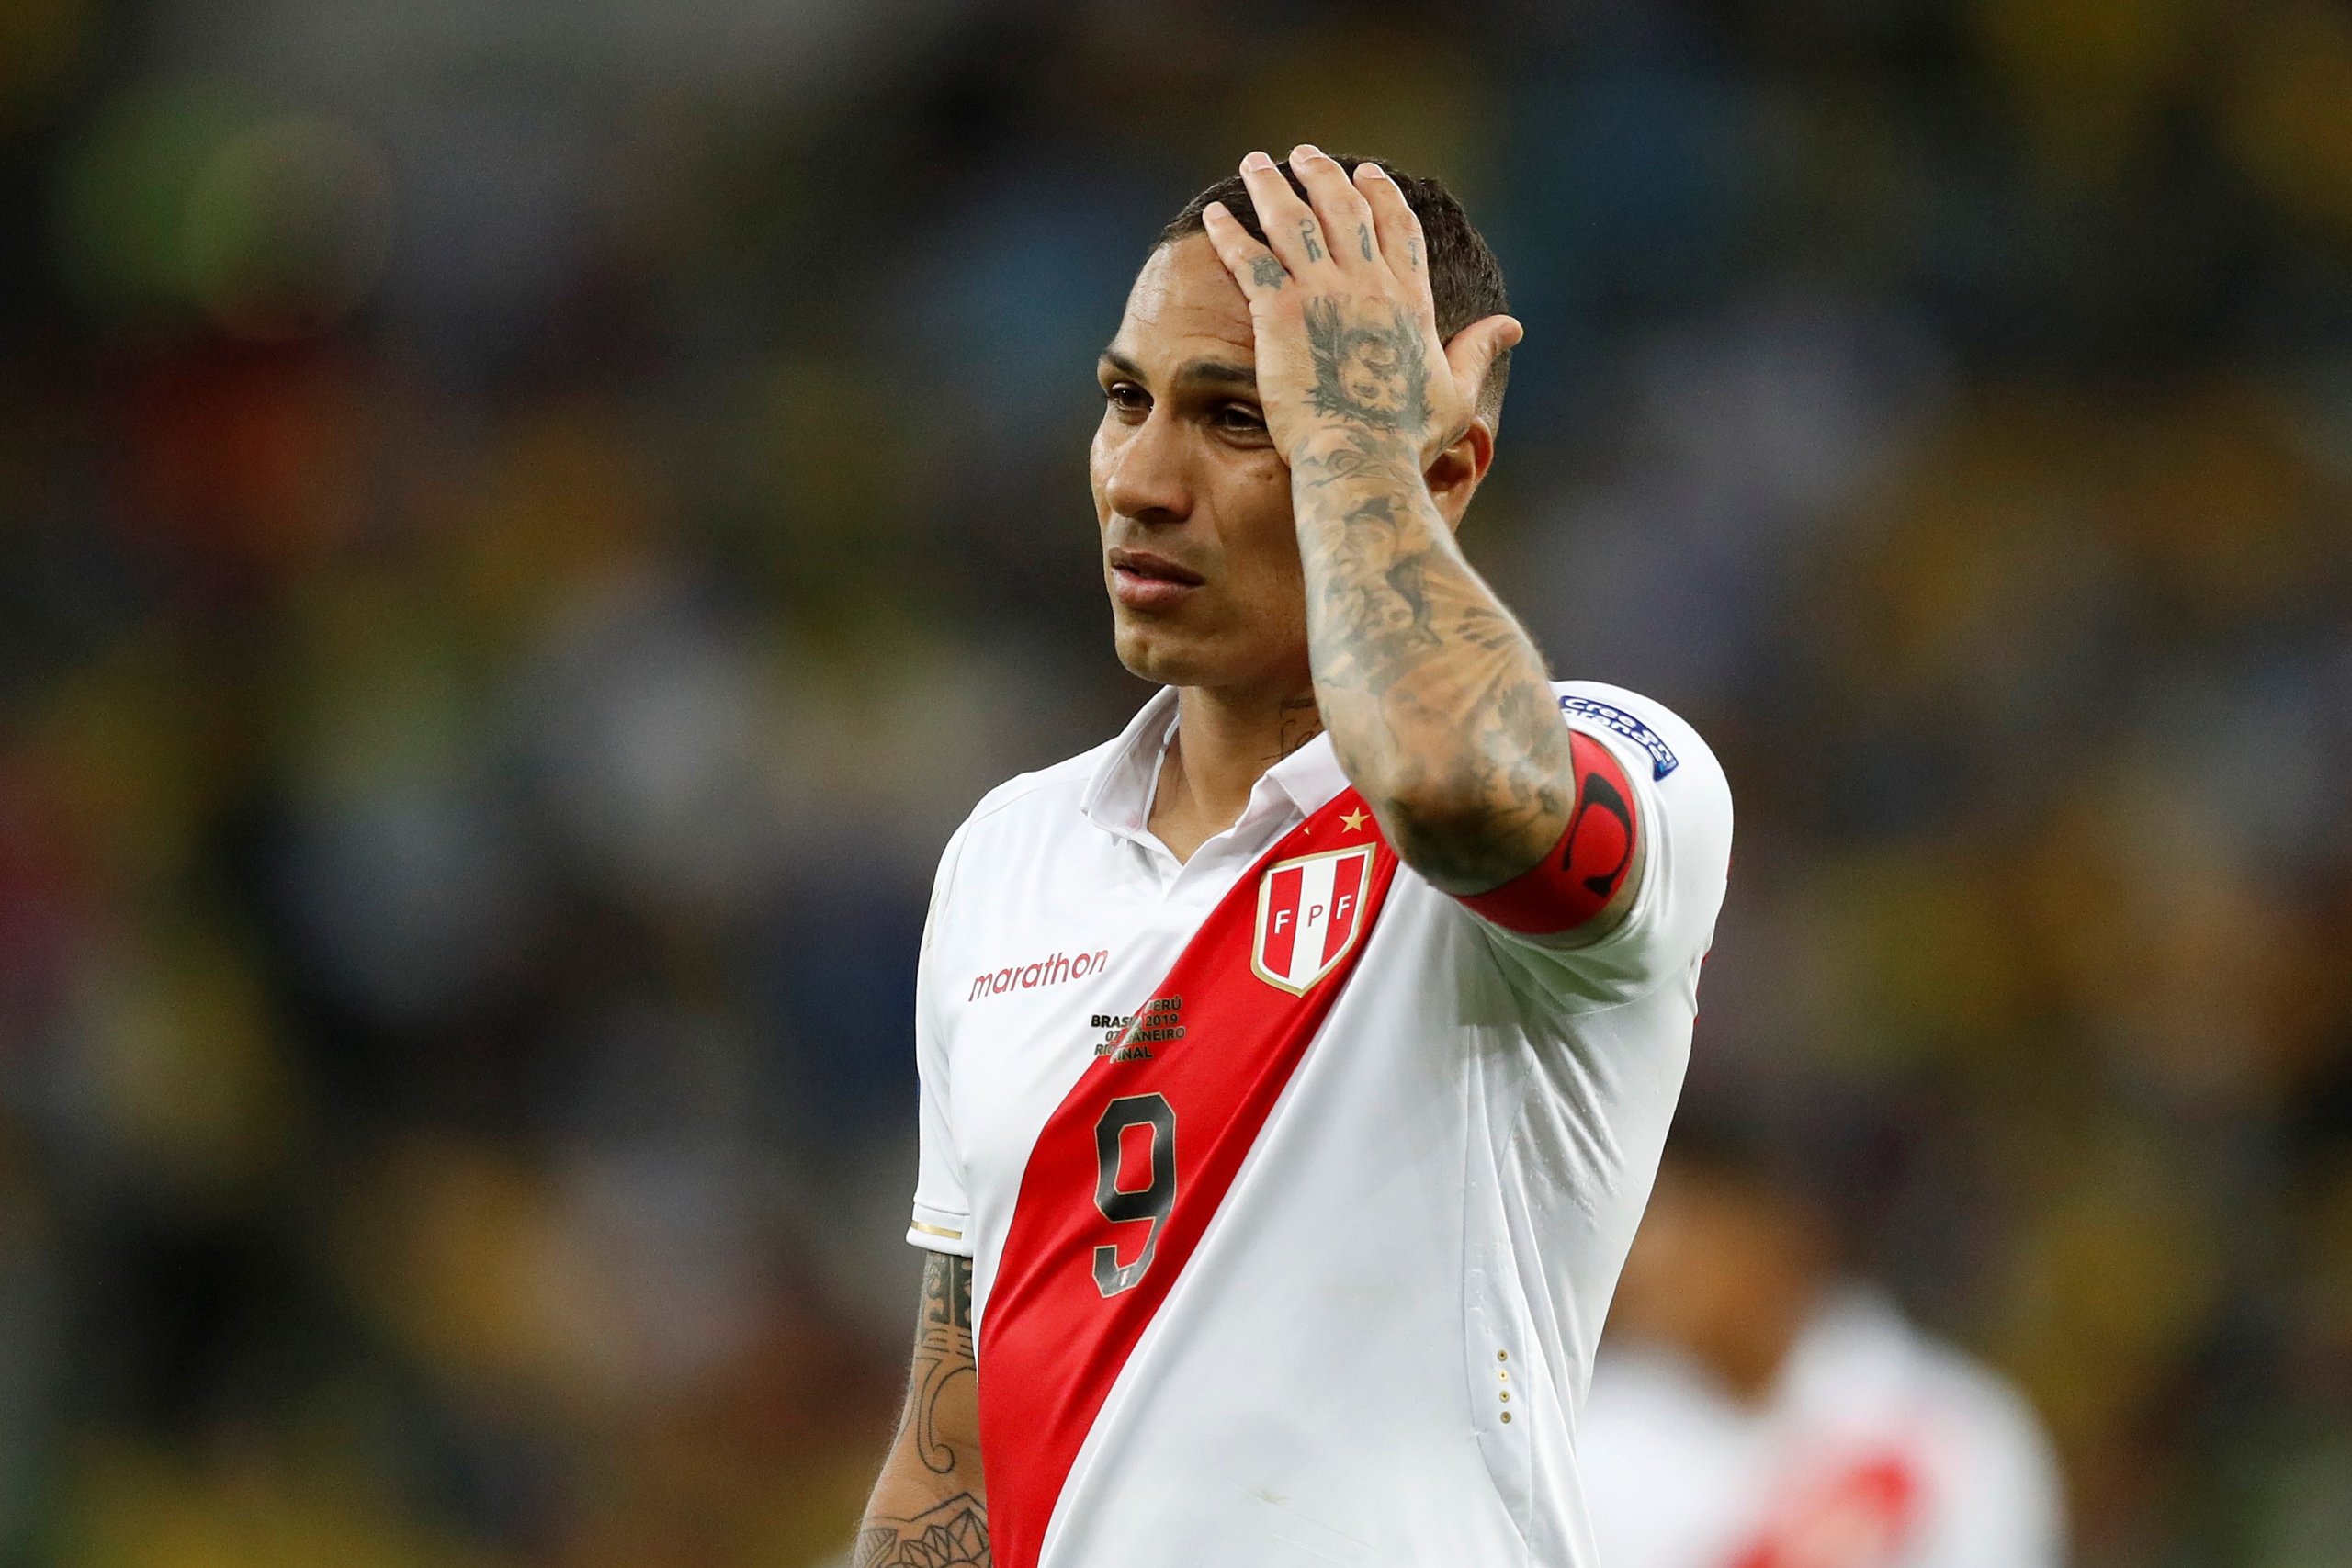 Brasil campeón de la Copa América 2019, Perú digno subcampeón